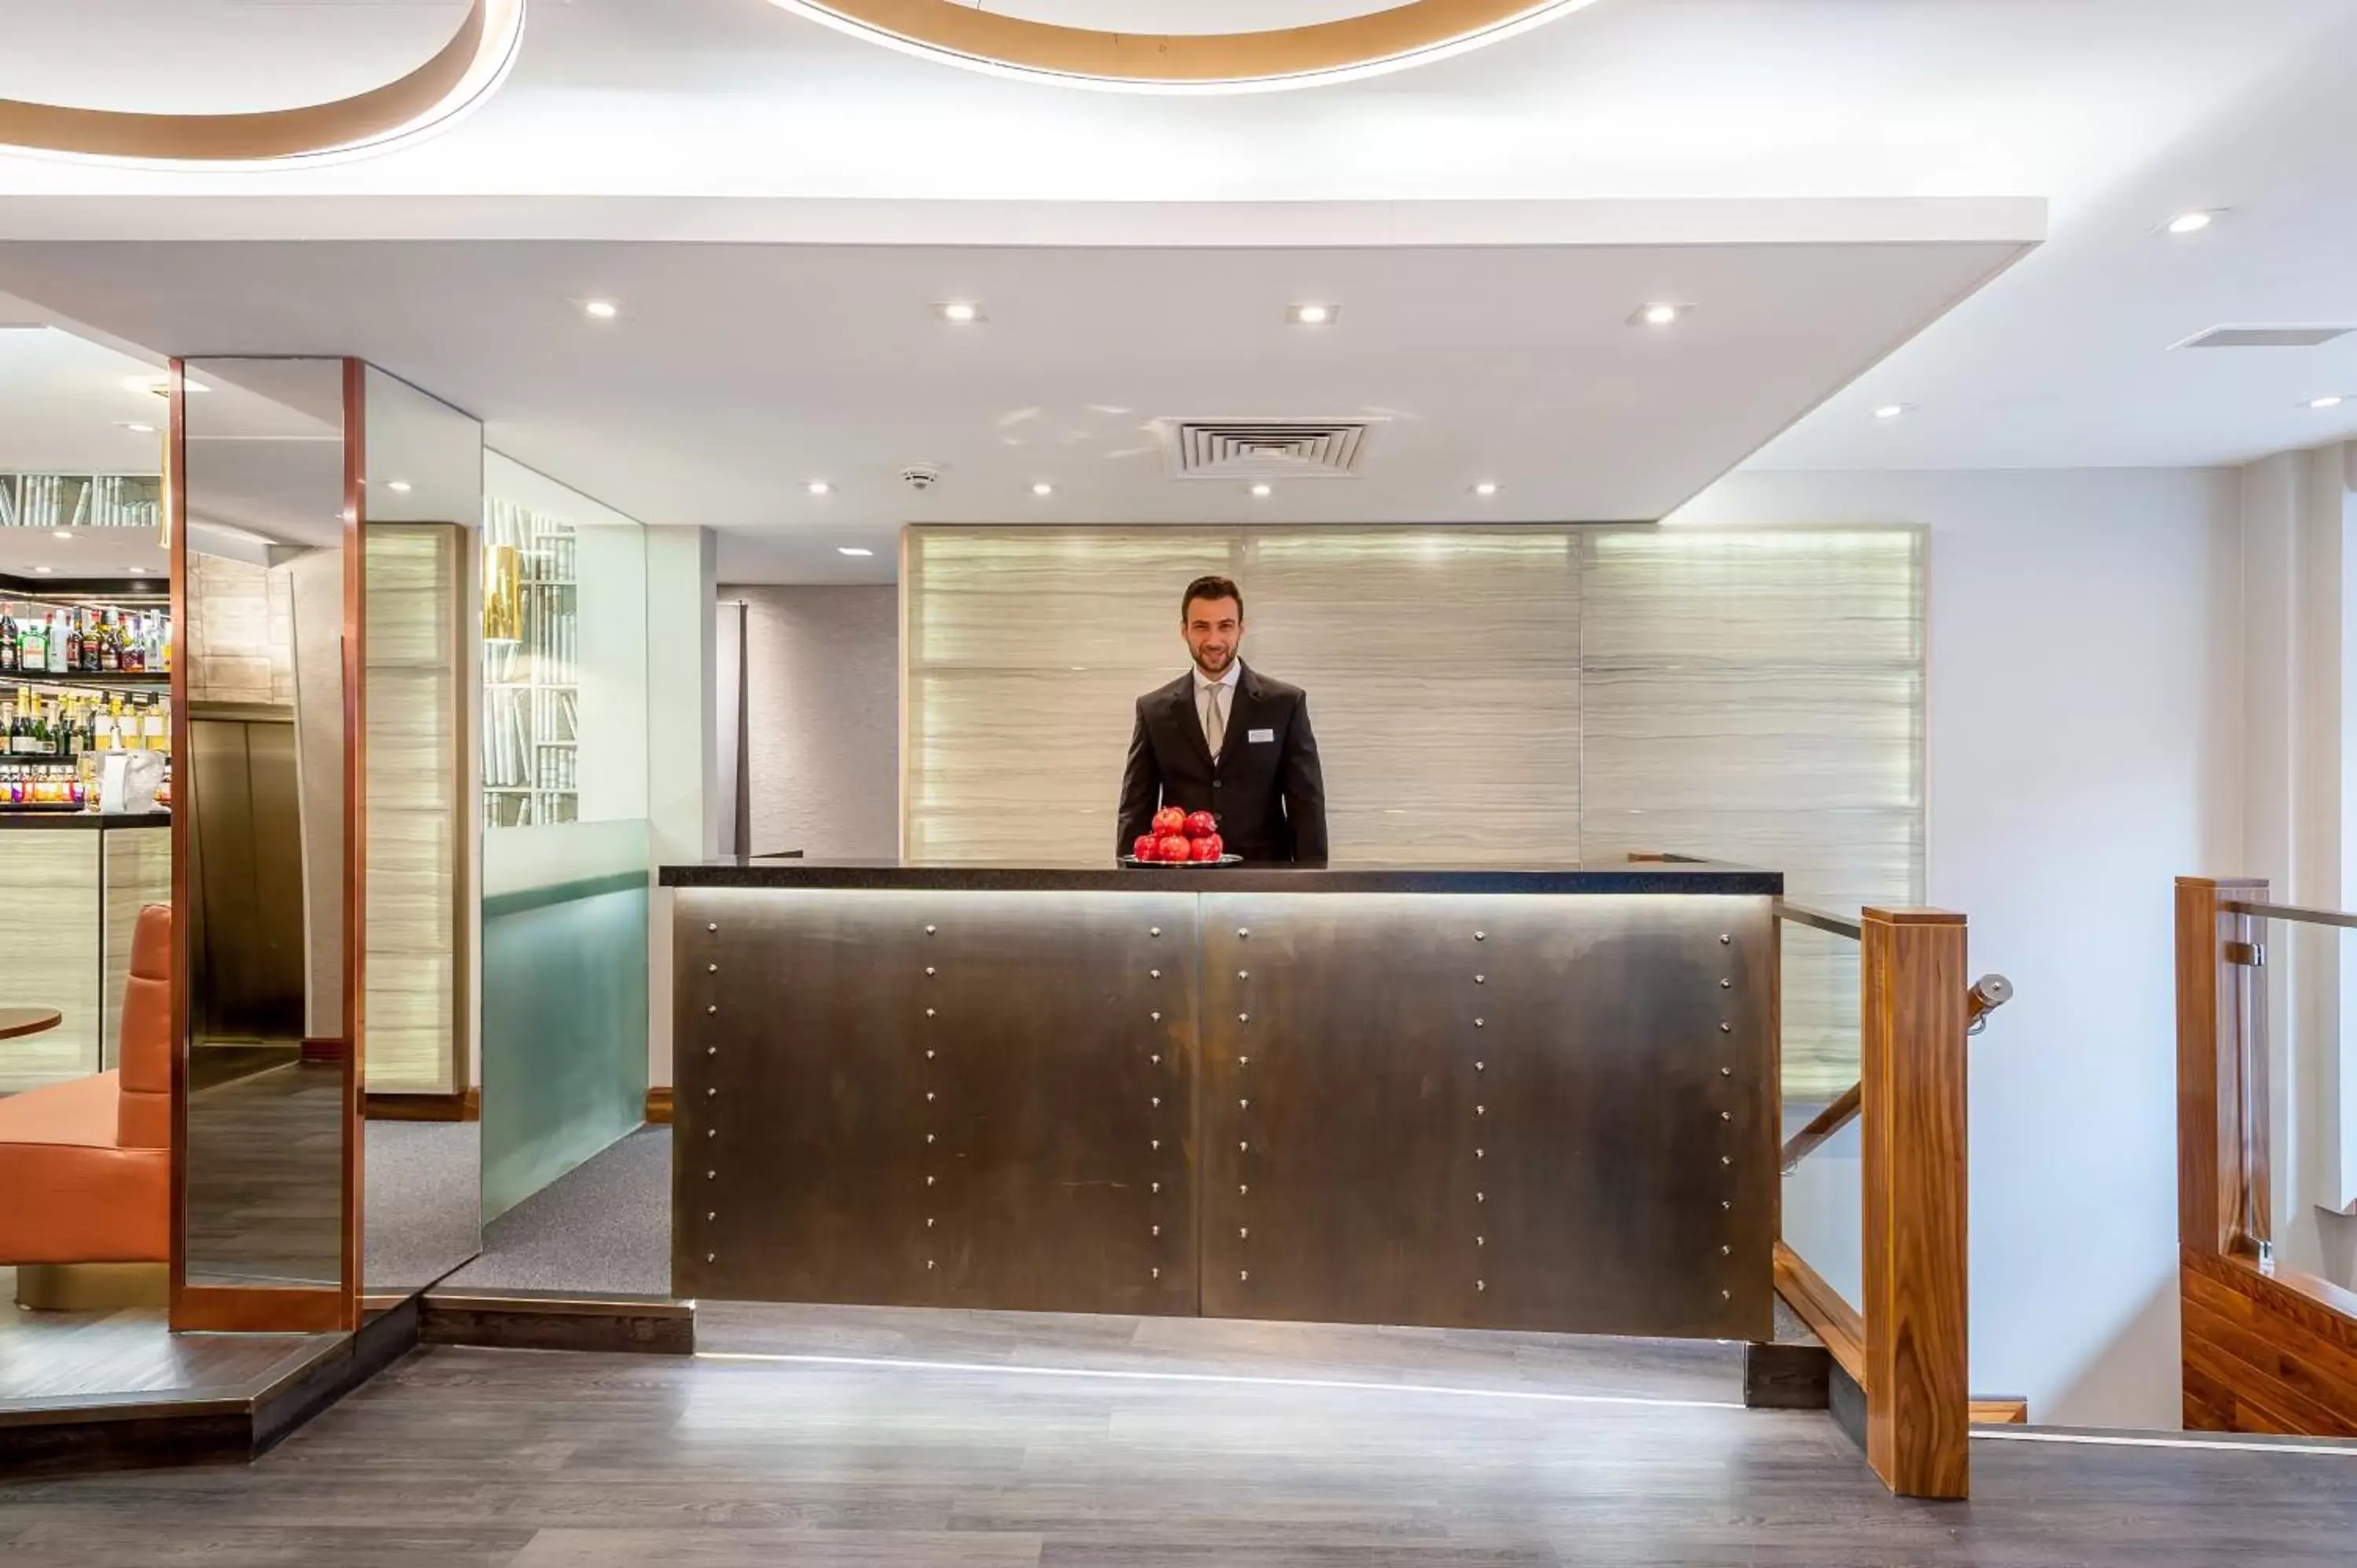 Lobby or reception, Lobby/Reception in Mercure London Paddington Hotel